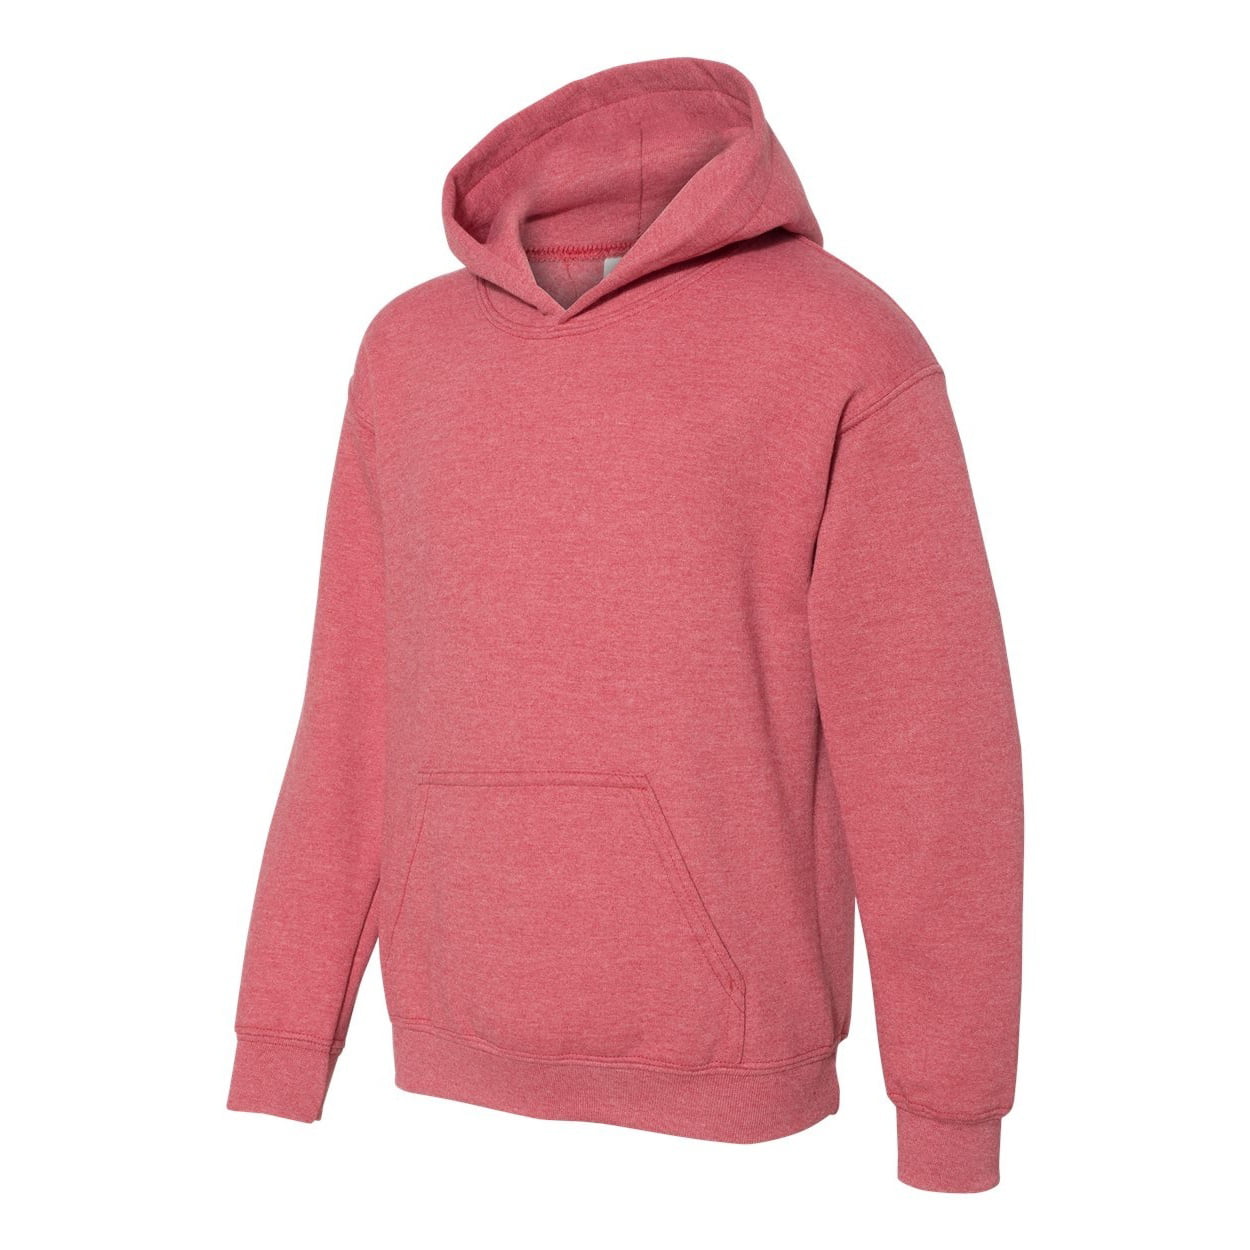 XL Red Gildan Heavy Blend Childrens Unisex Hooded Sweatshirt Top/Hoodie